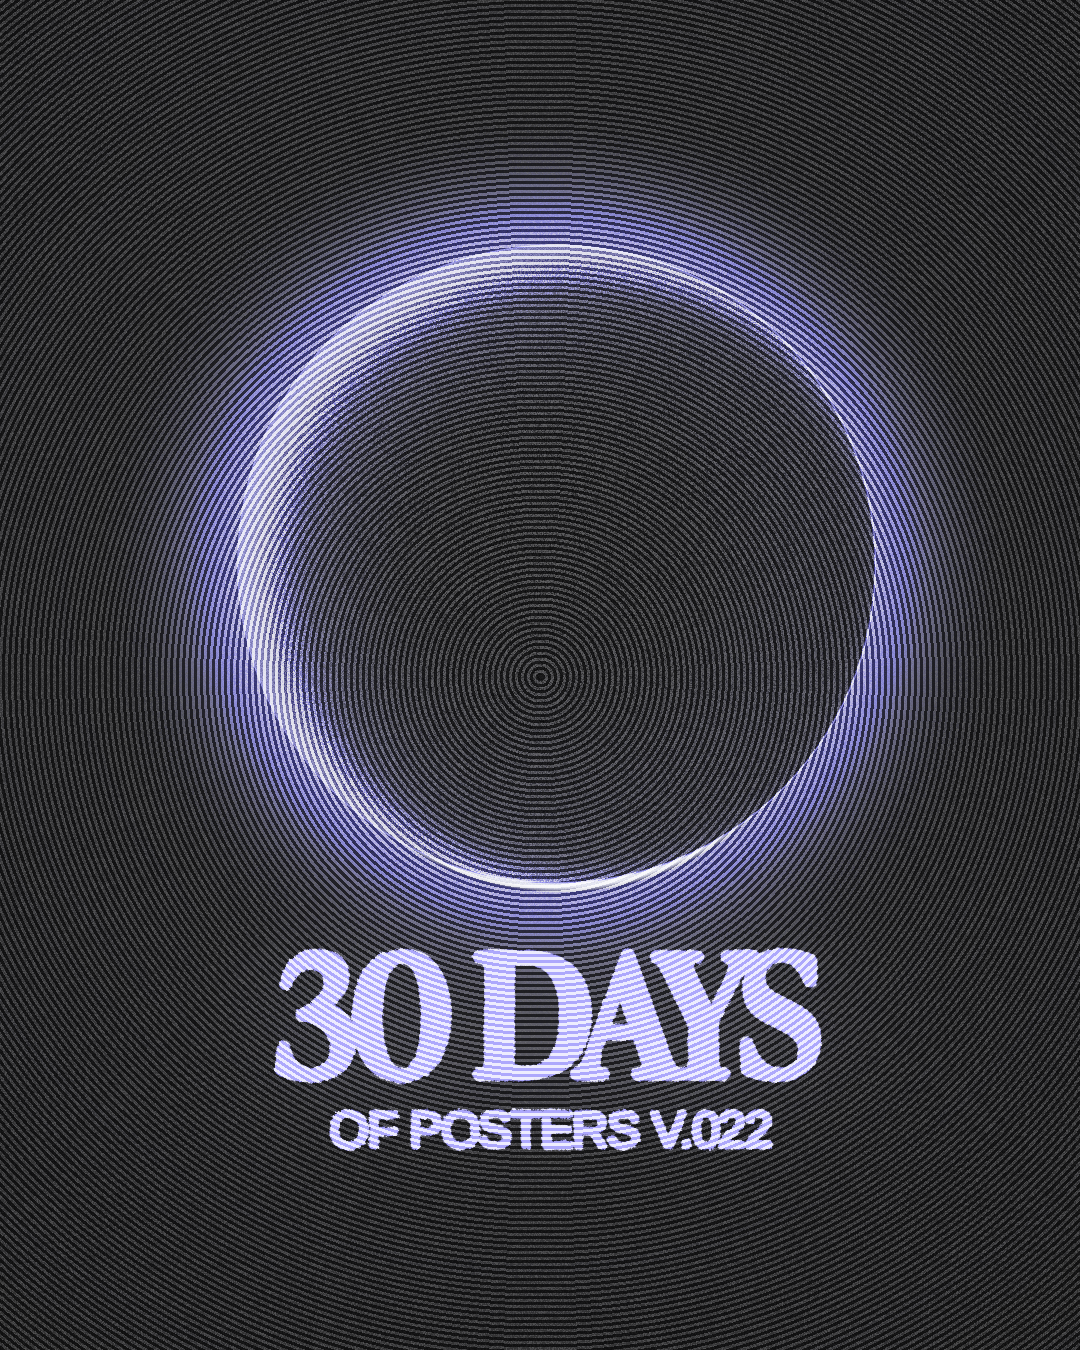 30 Days poster Challenge – V22